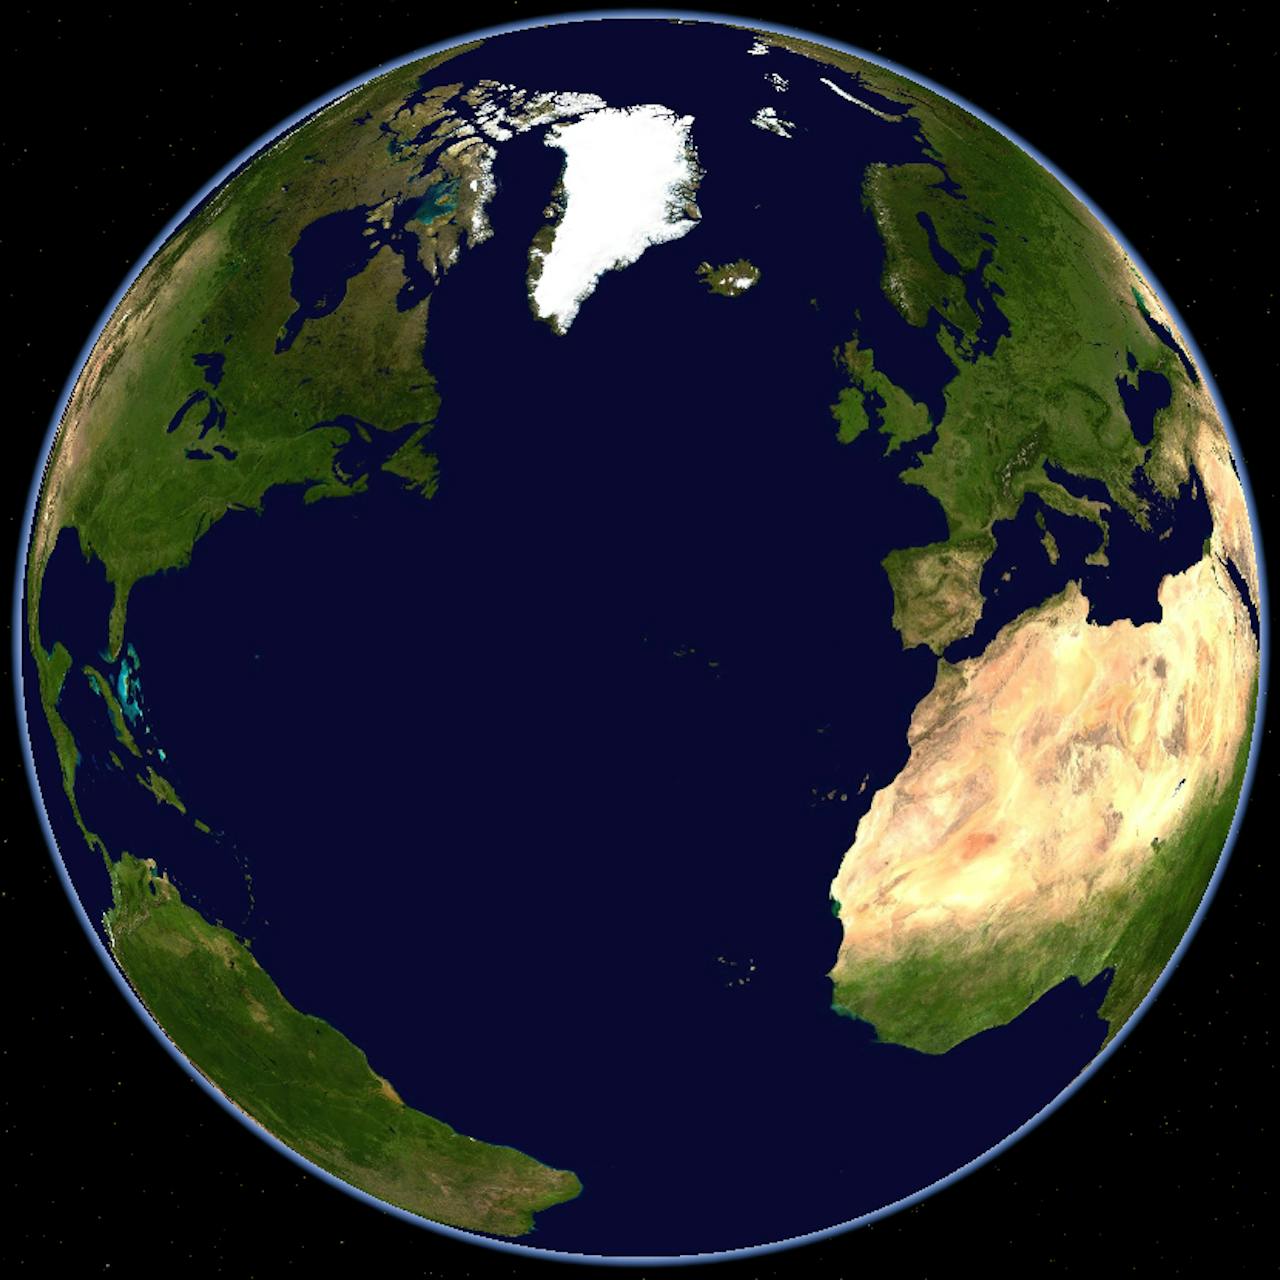 Een satellietbeeld van de aarde met de continenten en oceanen.